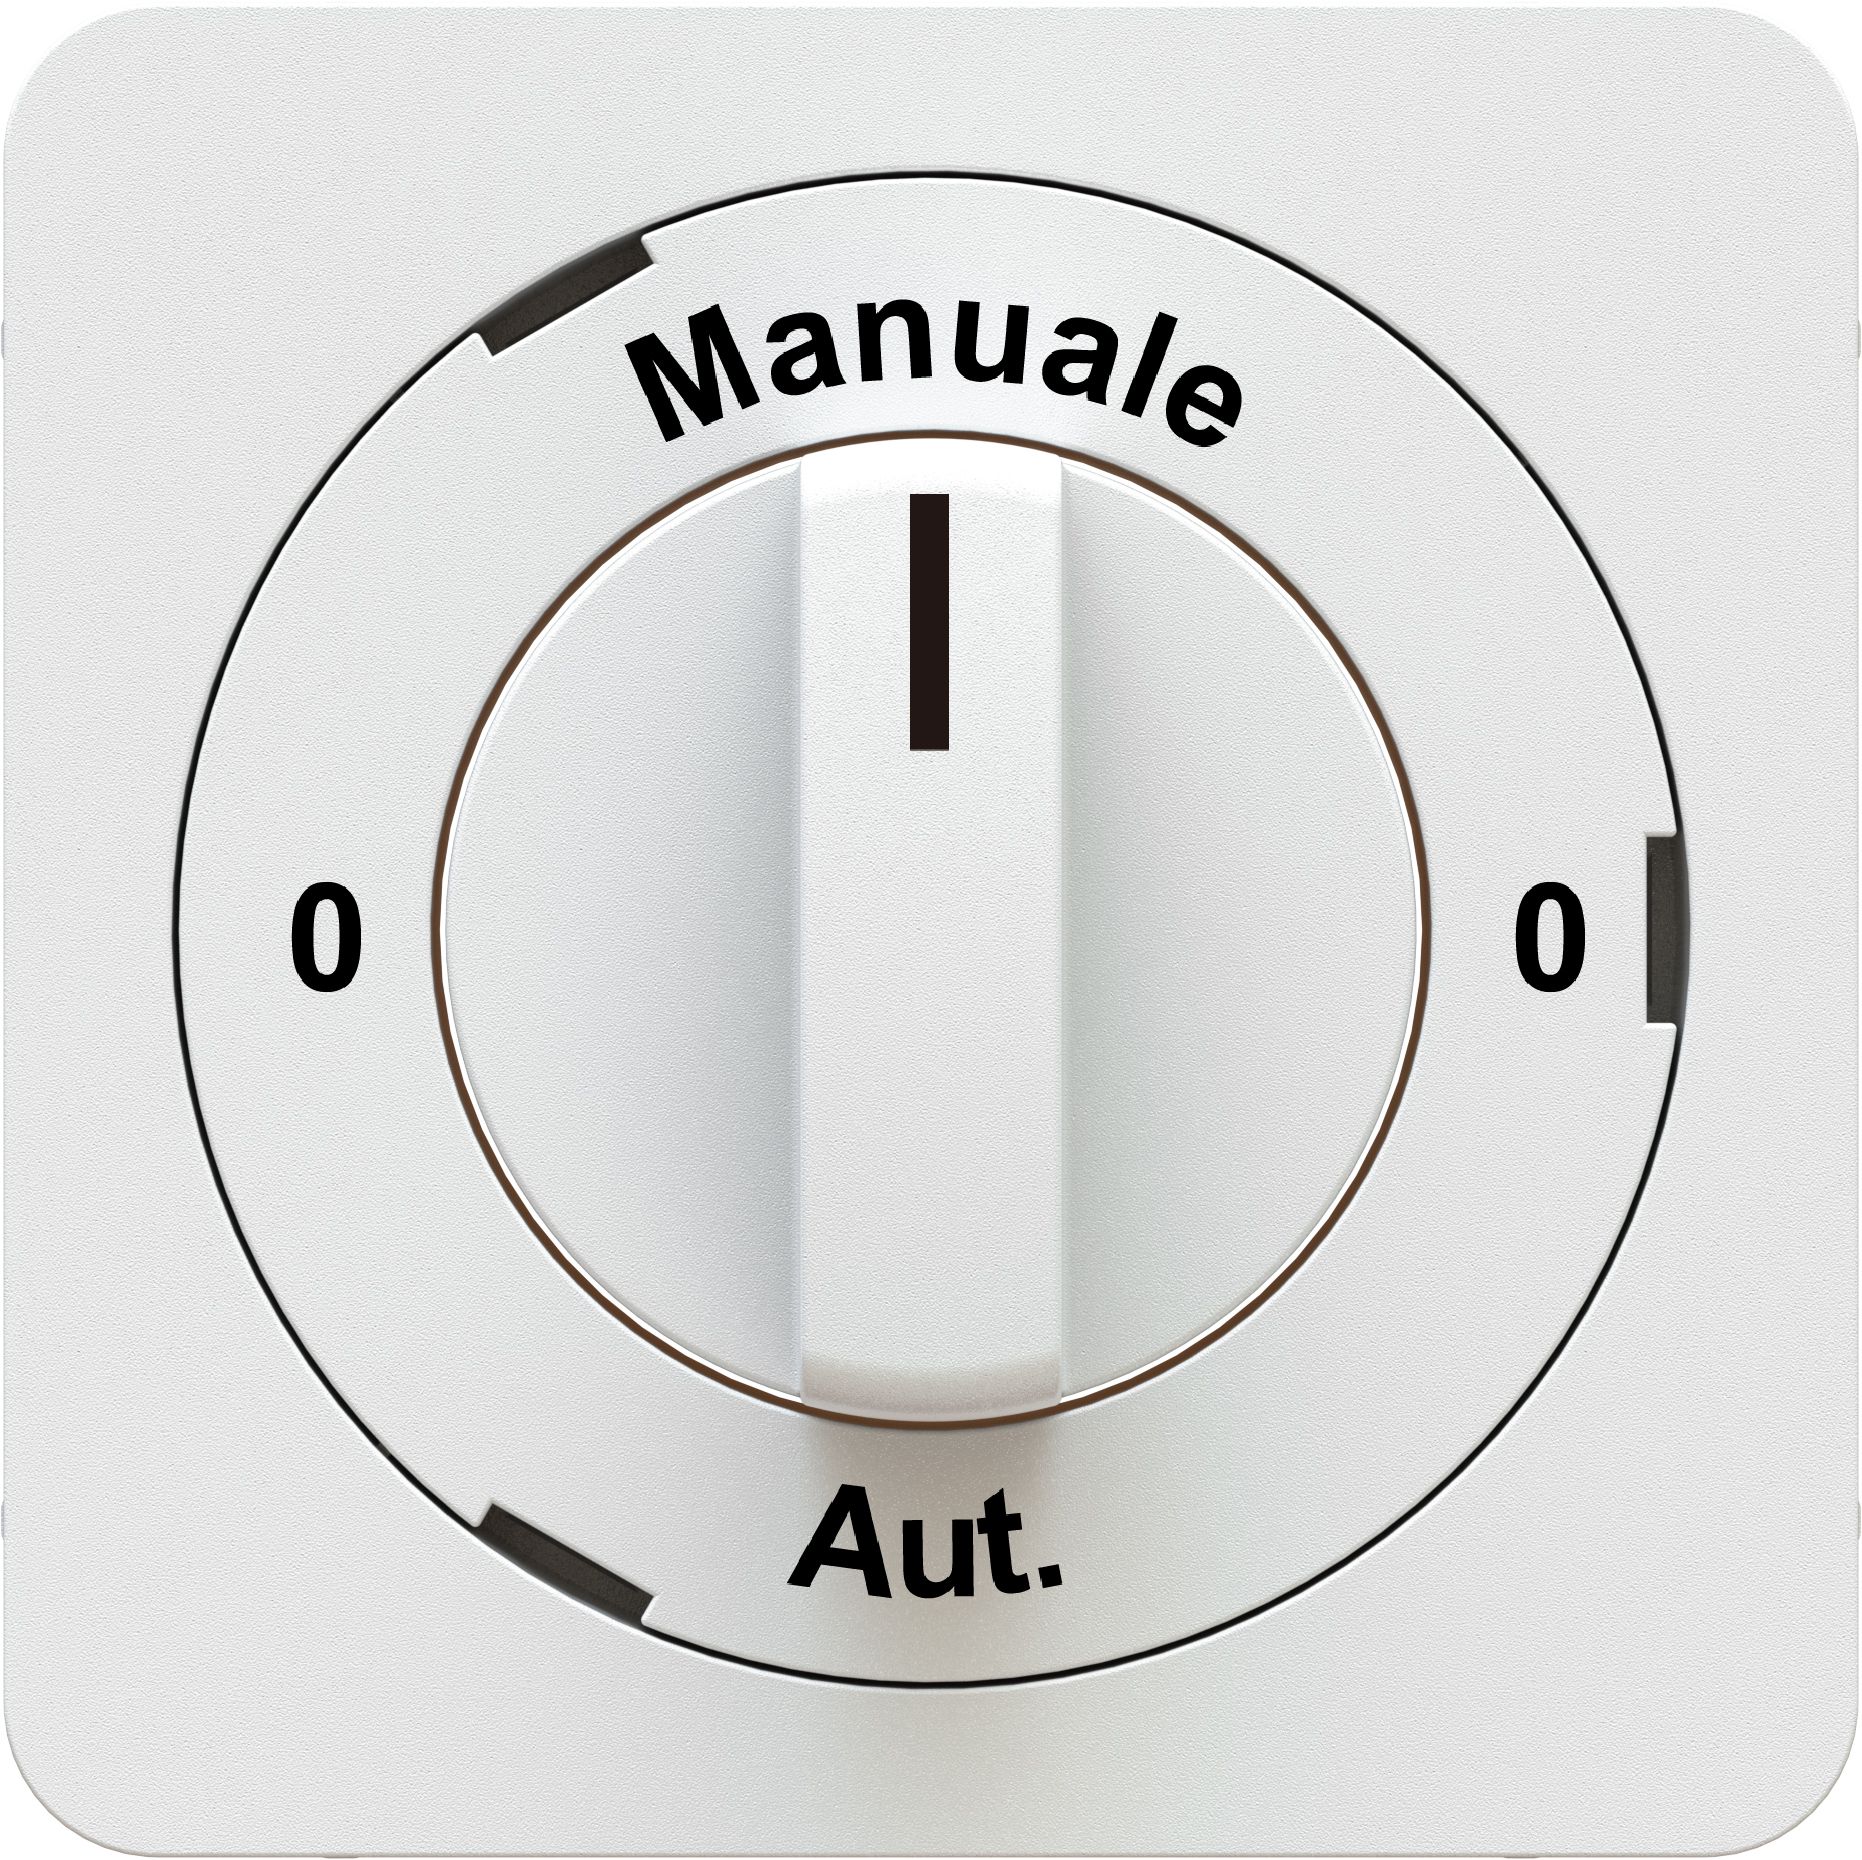 interrupteur rotatif/à clé 0-Manuale-0-Aut. plaque fr. priamos bc